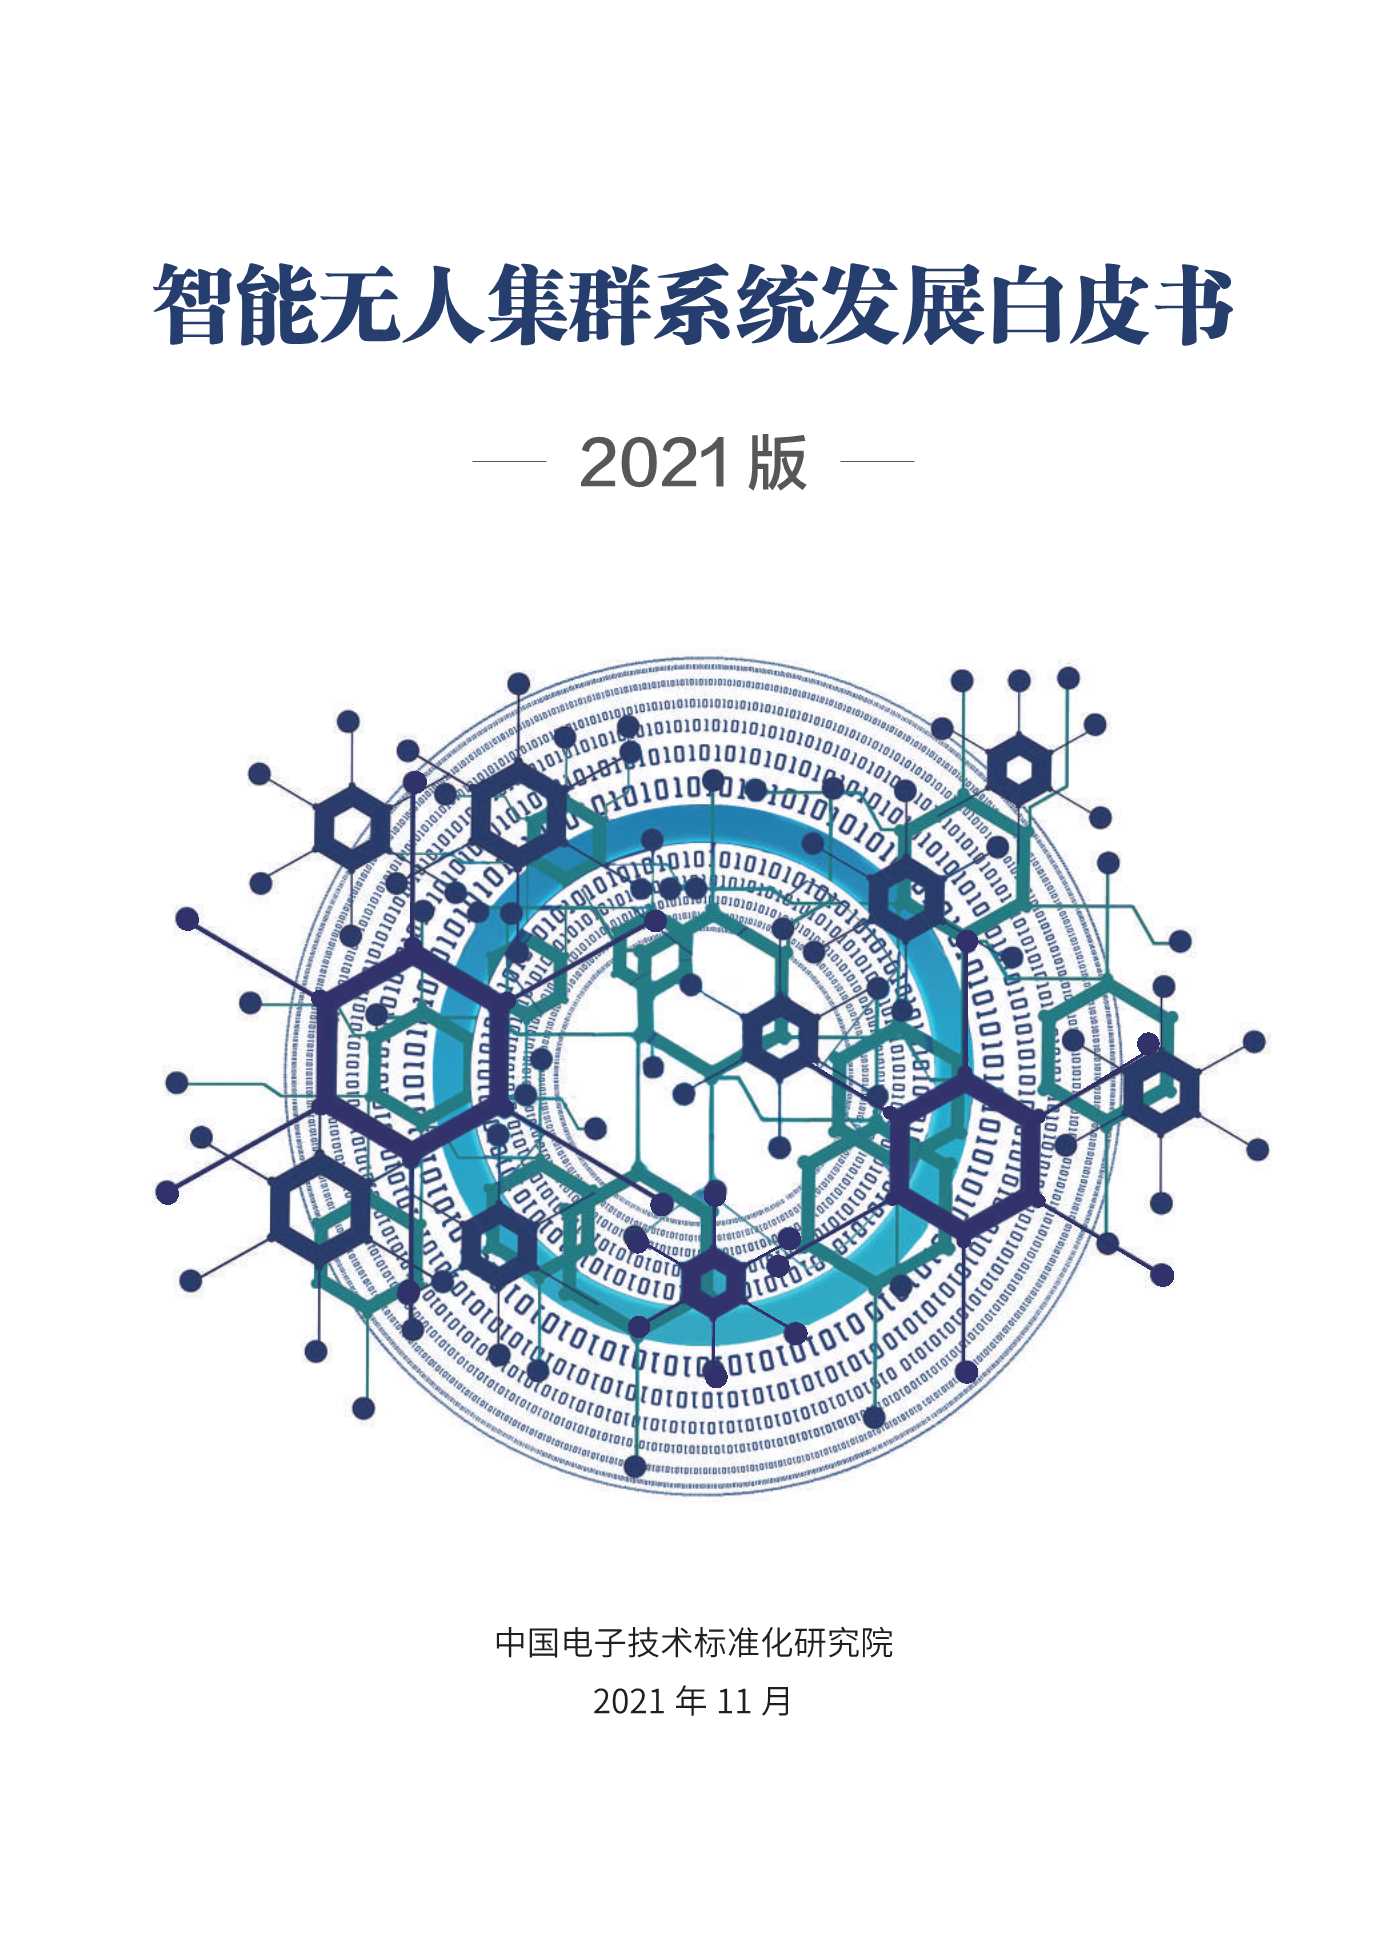 中国电子技术标准化研究院-智能无人集群系统发展白皮书-2021.12-77页